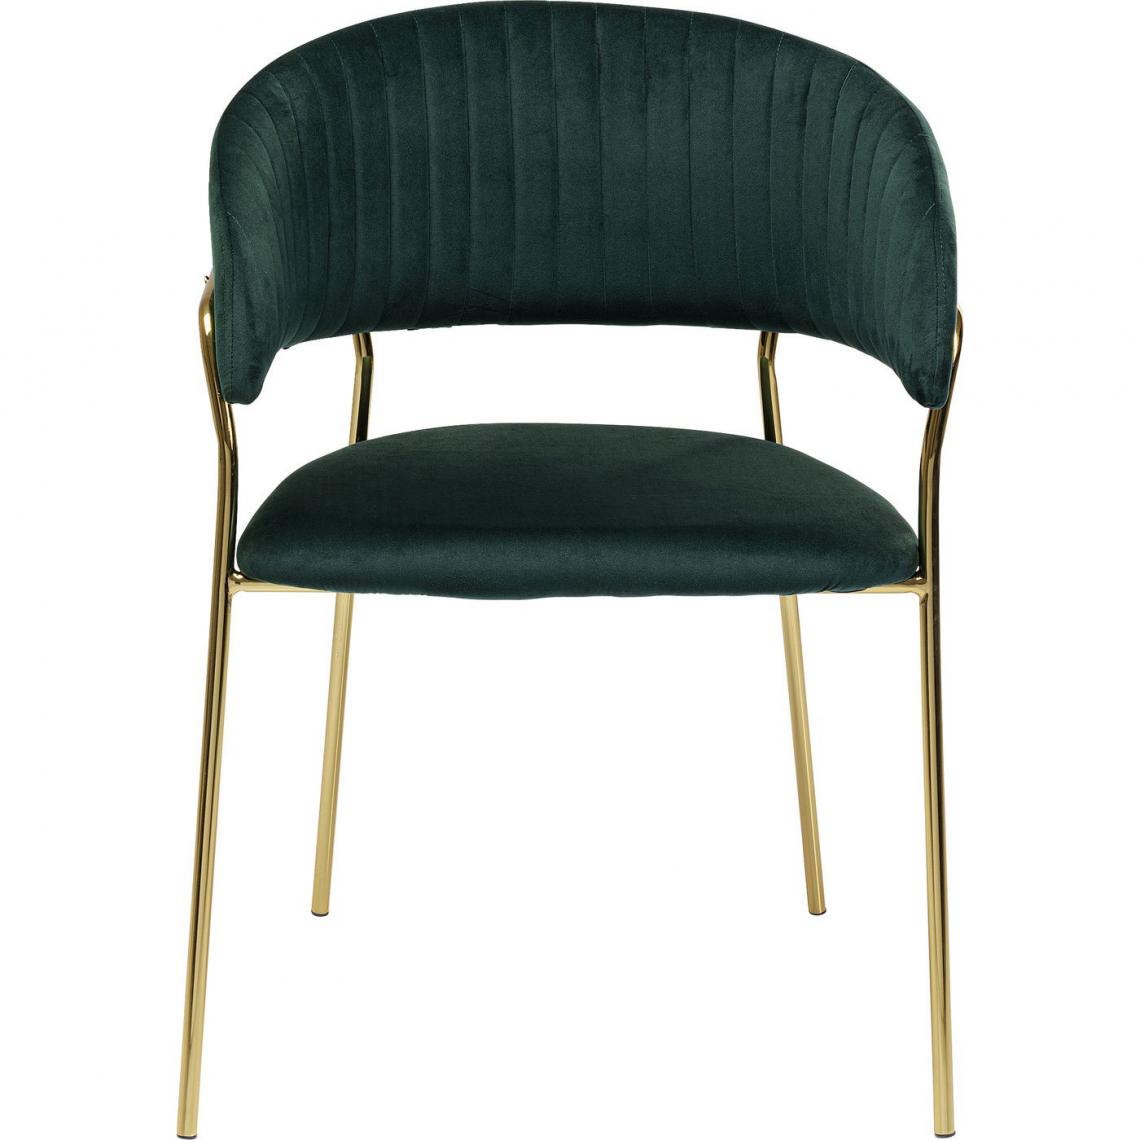 Karedesign - Chaise avec accoudoirs Belle velours vert Kare Design - Chaises